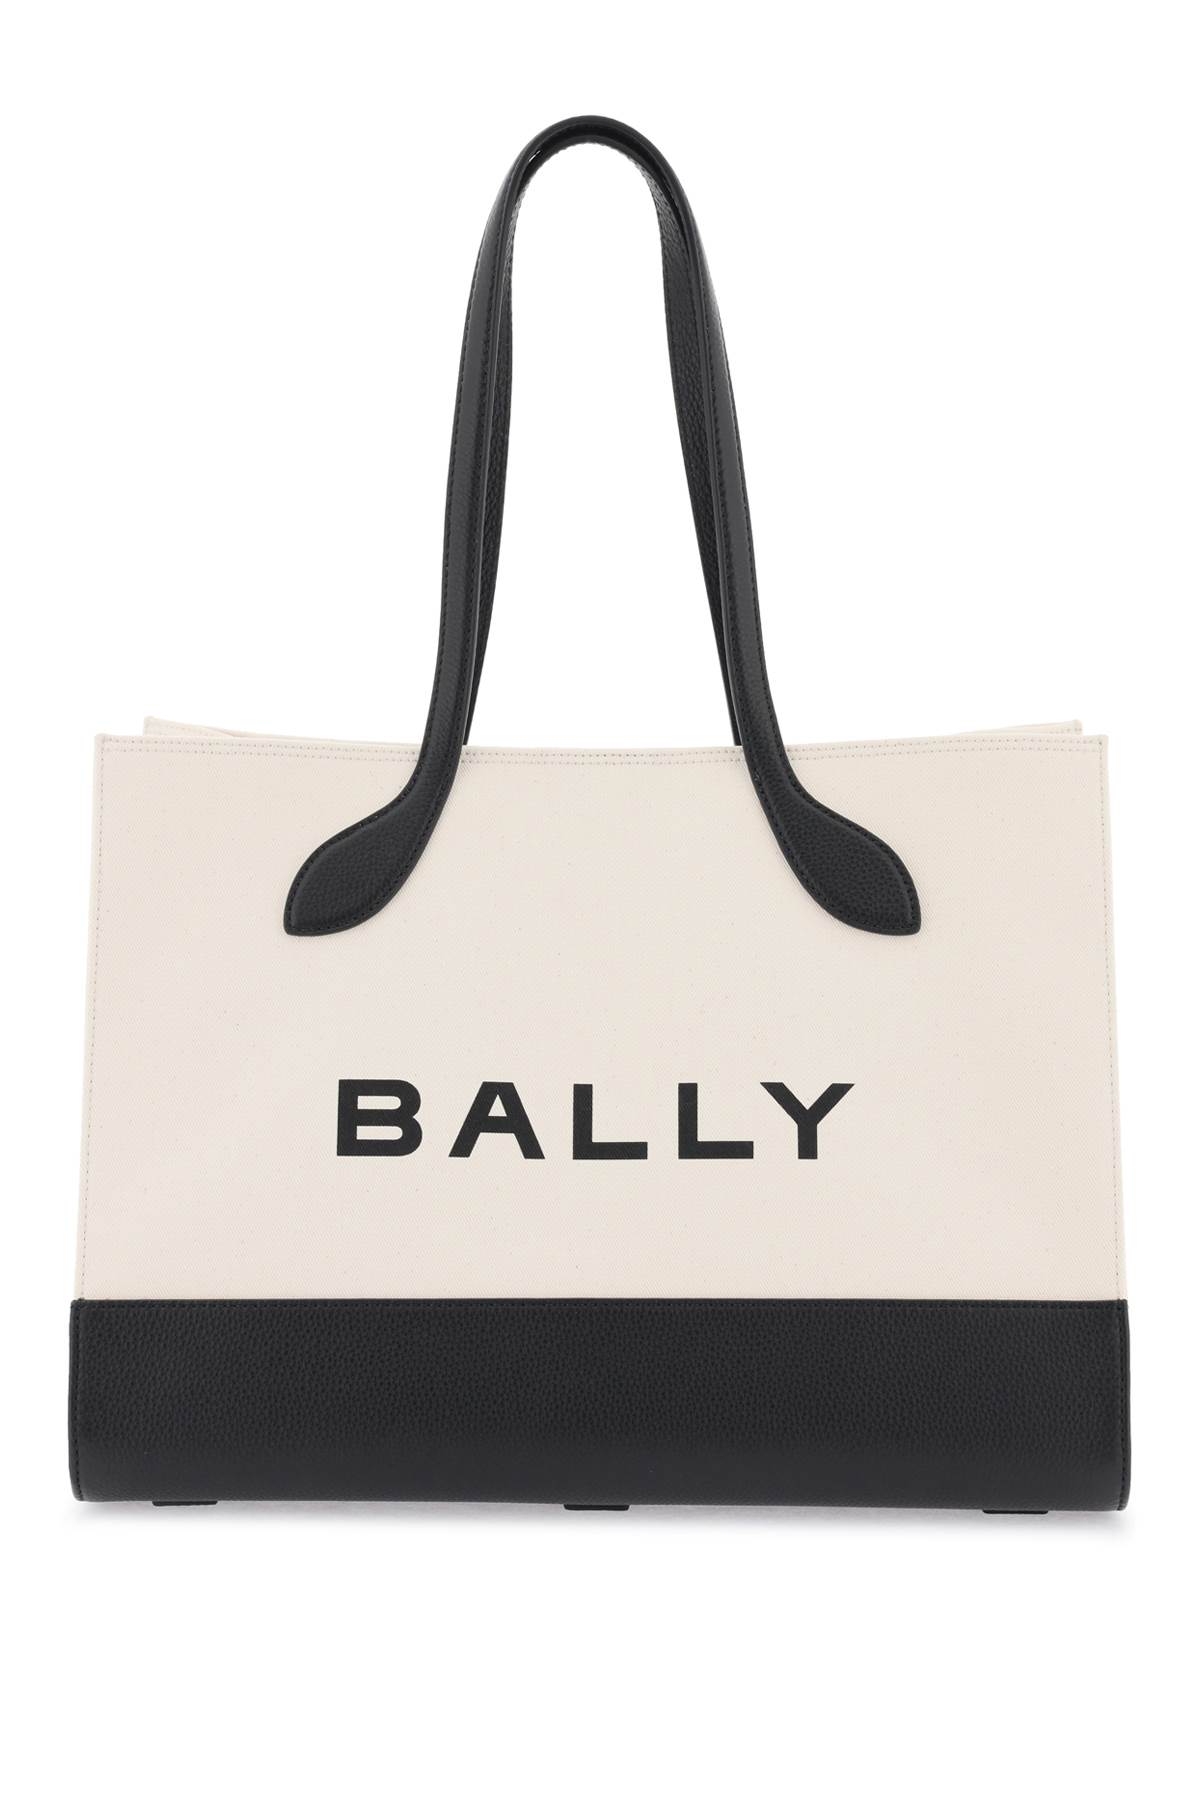 Bally keep On Tote Bag